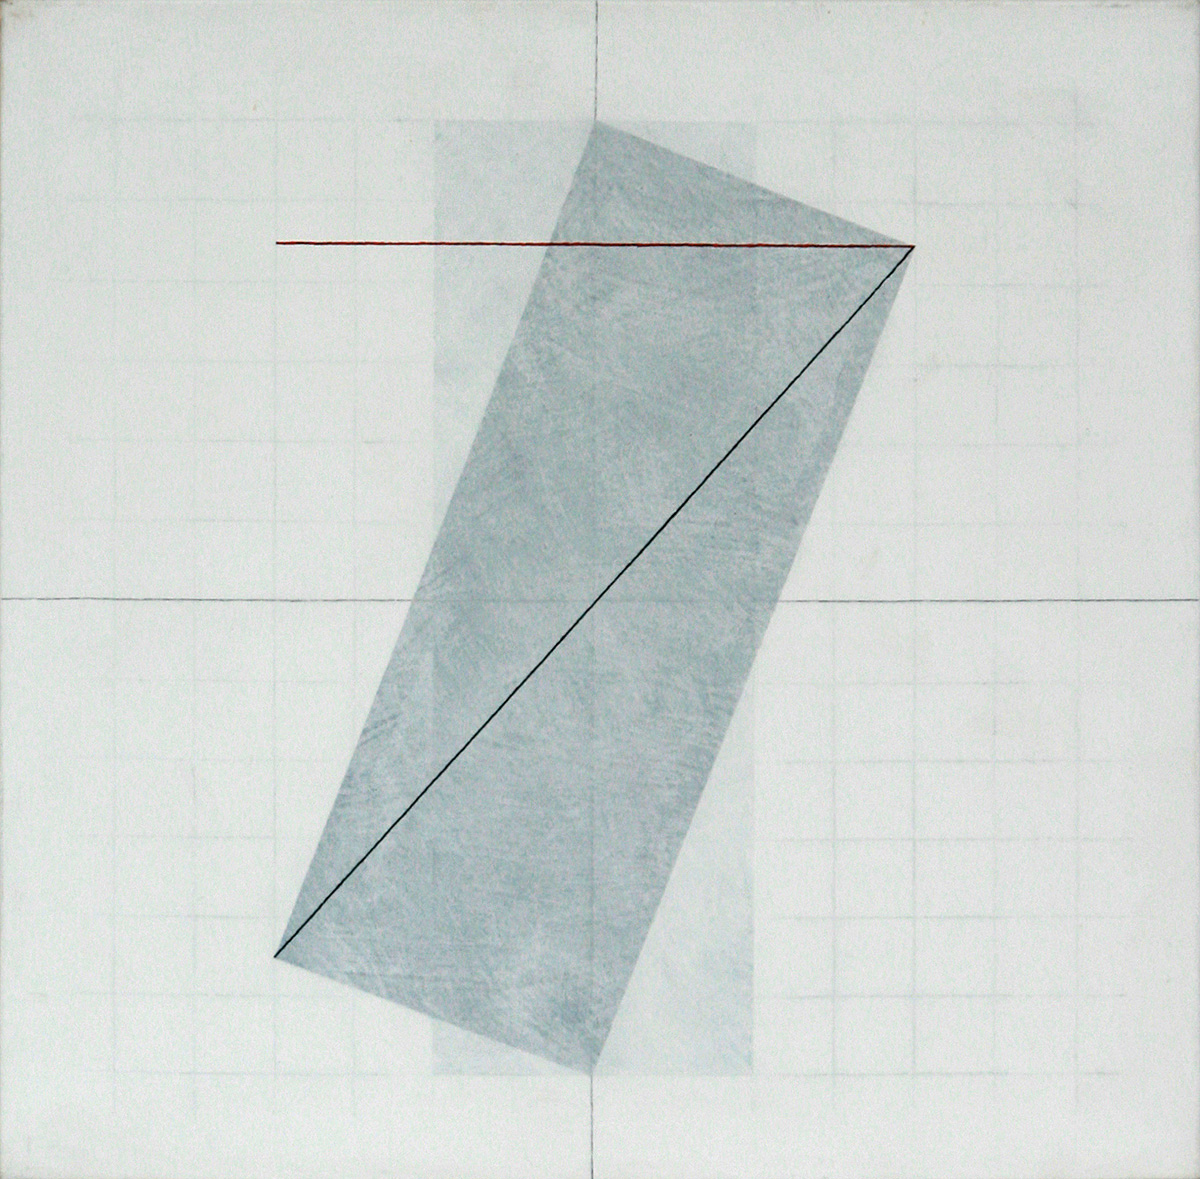 Grundkozept / Prinzipien, 200375 x 75 cmAcrylic, graphite, marker